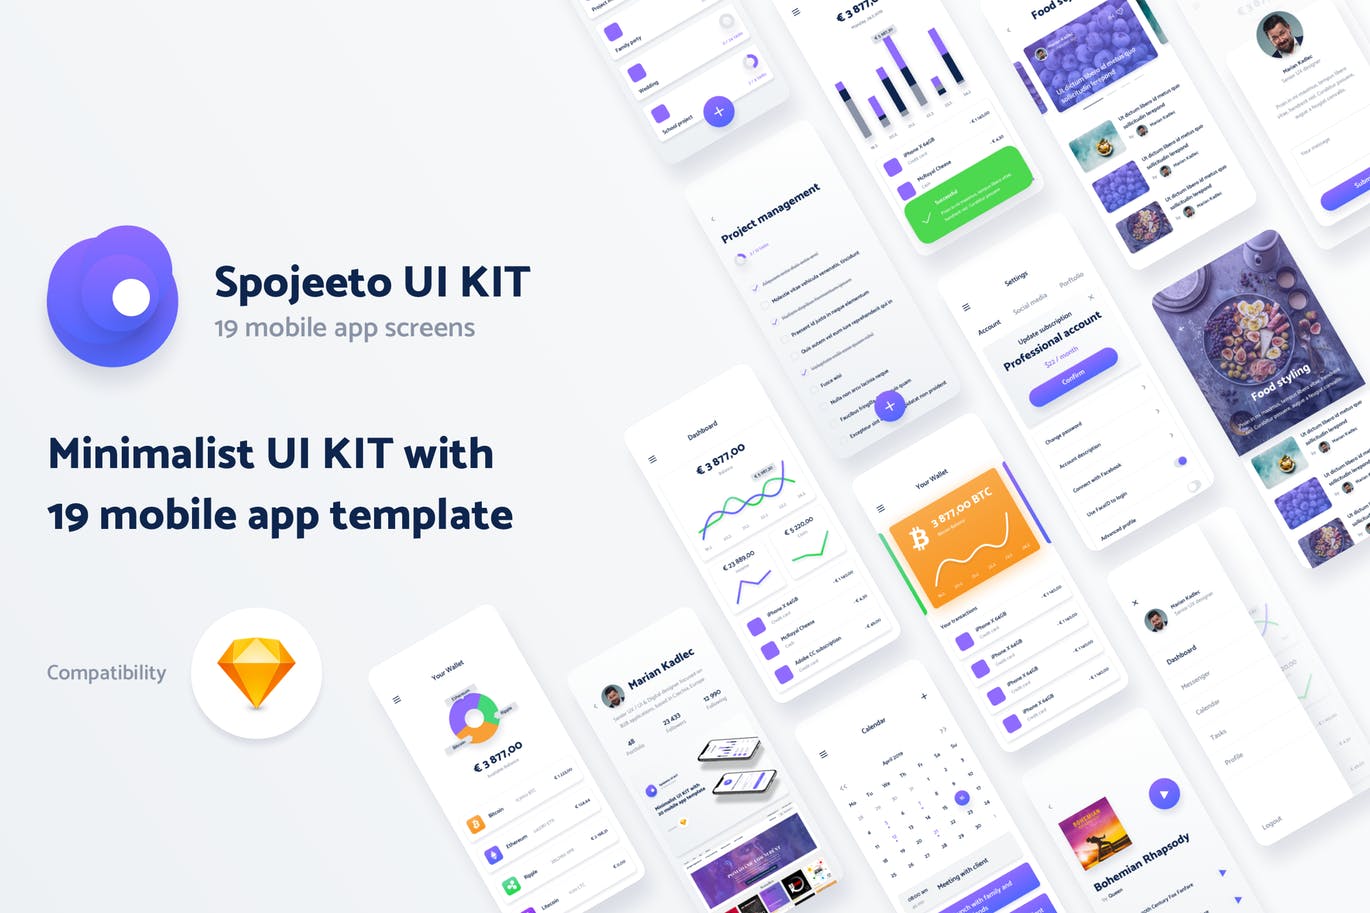 极简主义设计风格APP应用UI设计素材库精选套件v2 Vol. 2 – Spojeeto Mobile App UI Kit插图